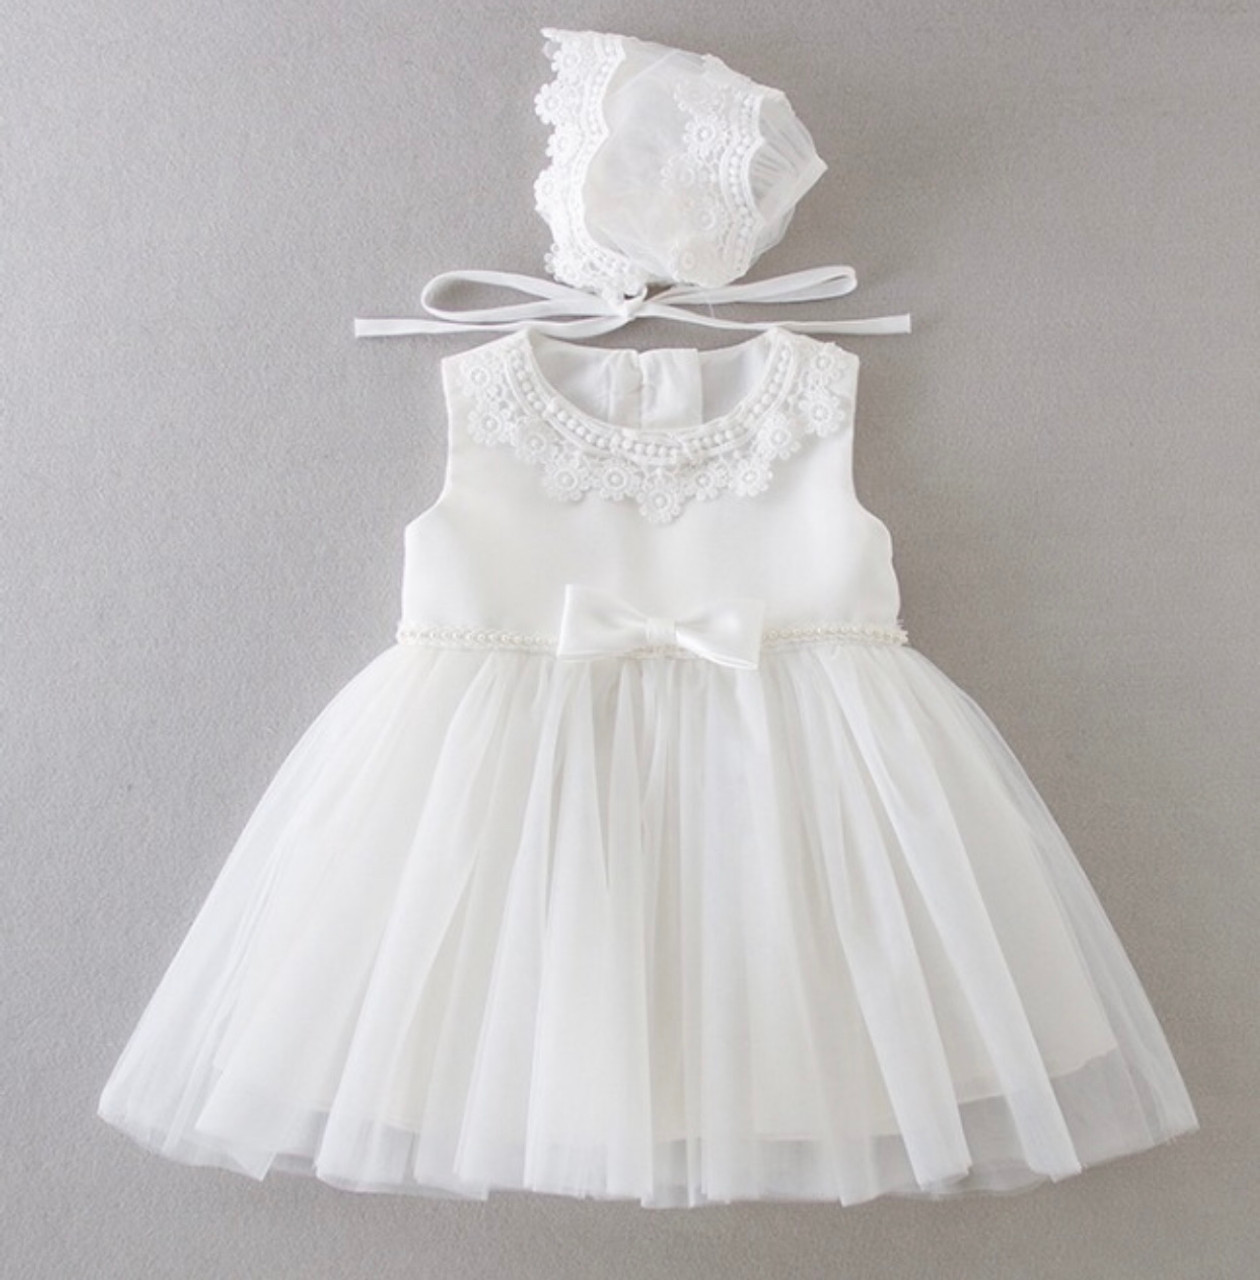 Ballerina Flower Girl Dress - Ivory - Infant/Toddler BL228 – Mollys Hanger